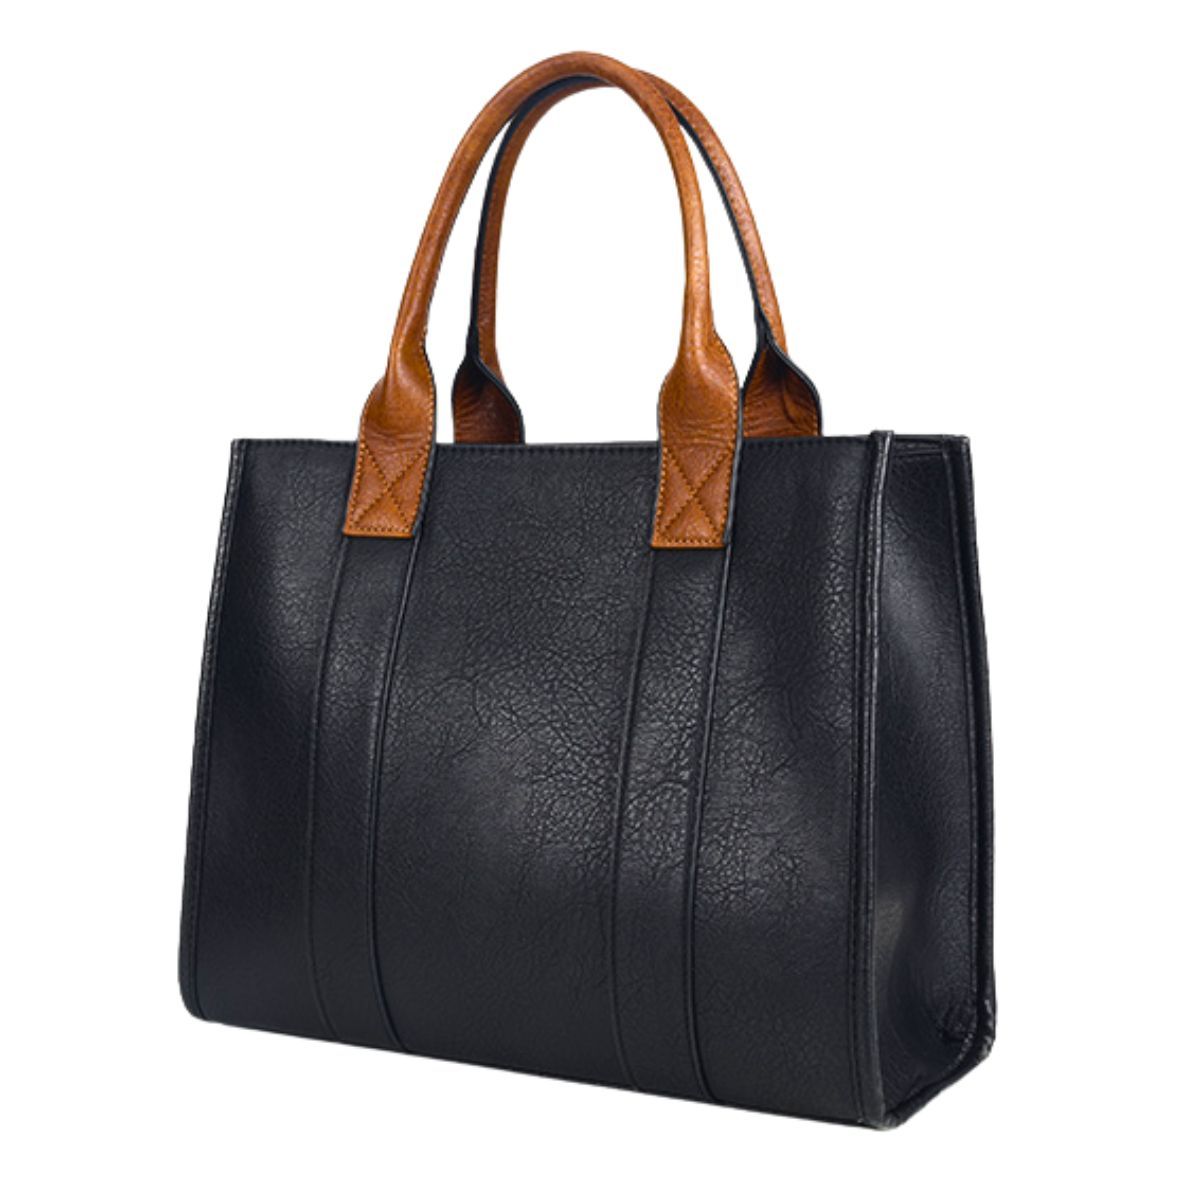 Purse Black Soft Grain Satchel Bag for Women